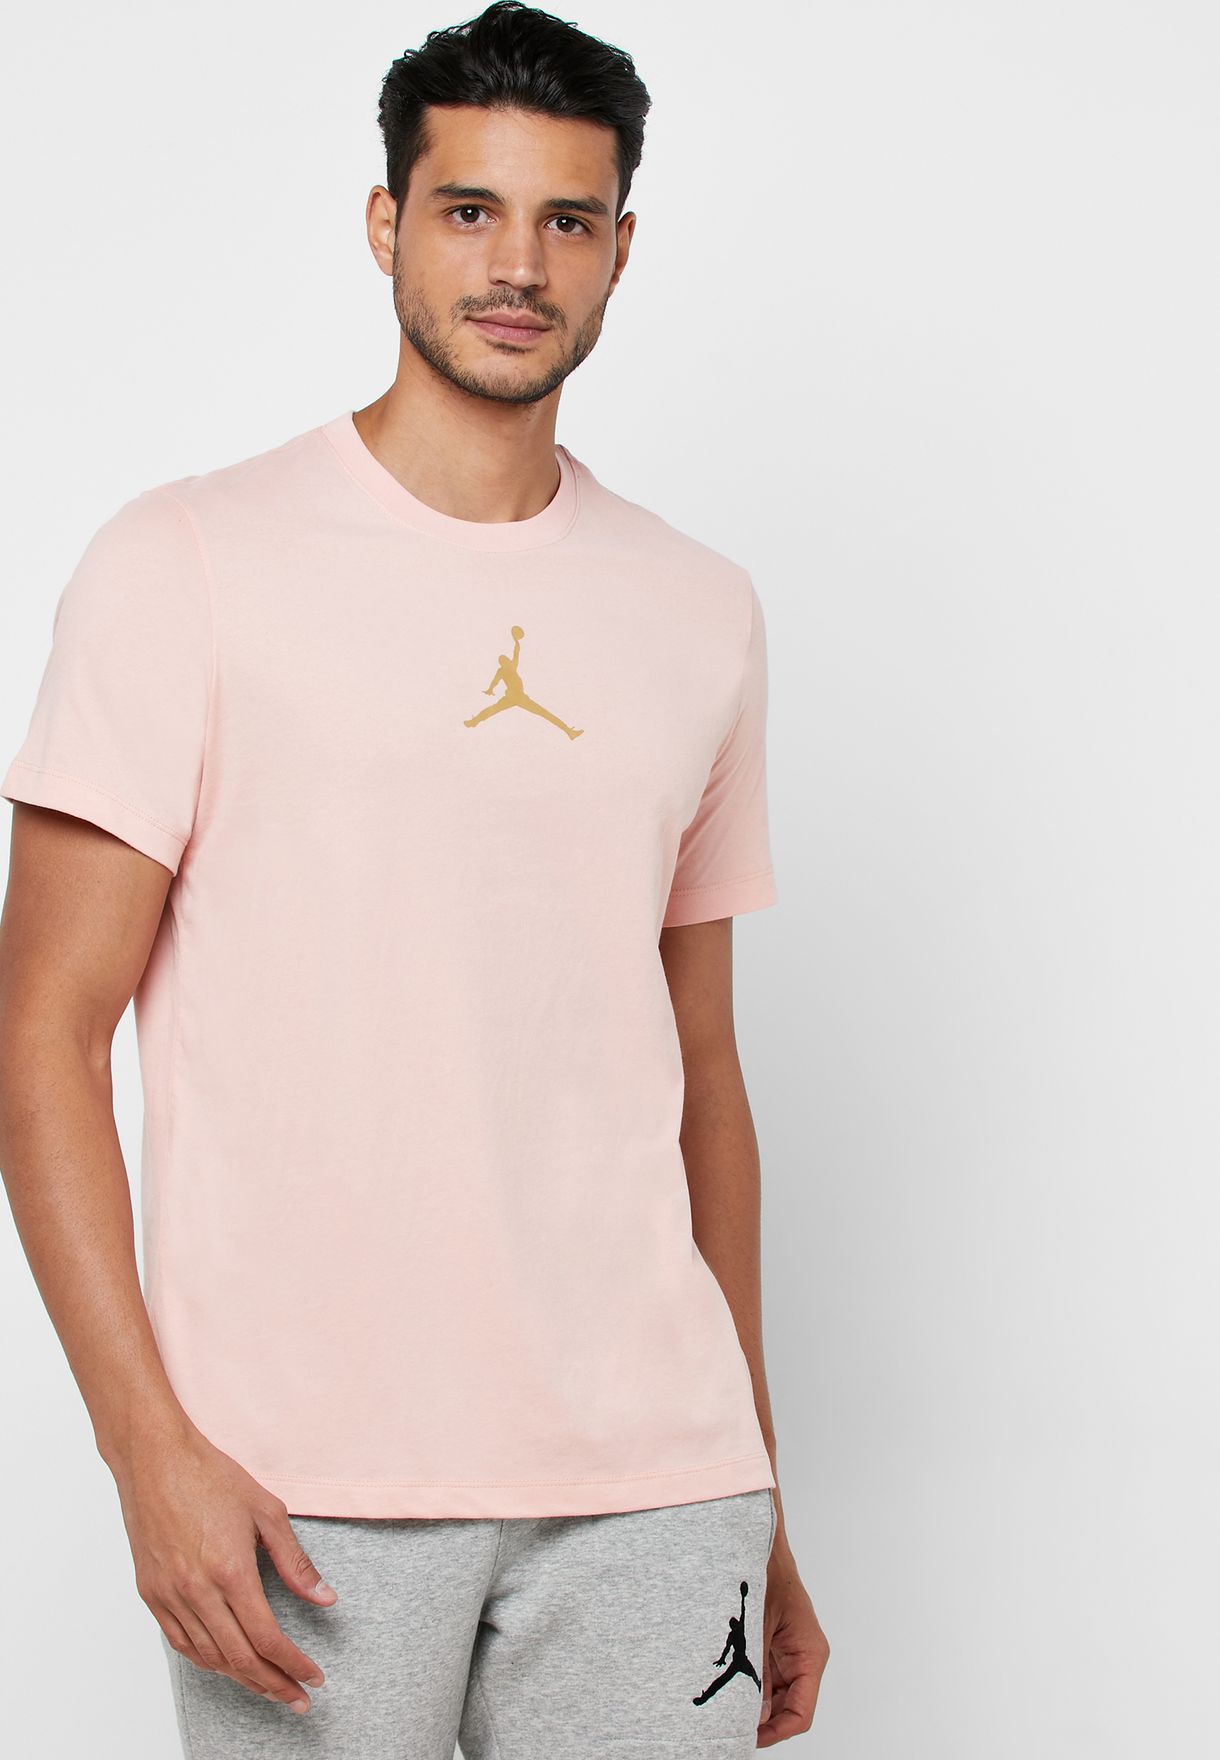 grey and pink jordan shirt